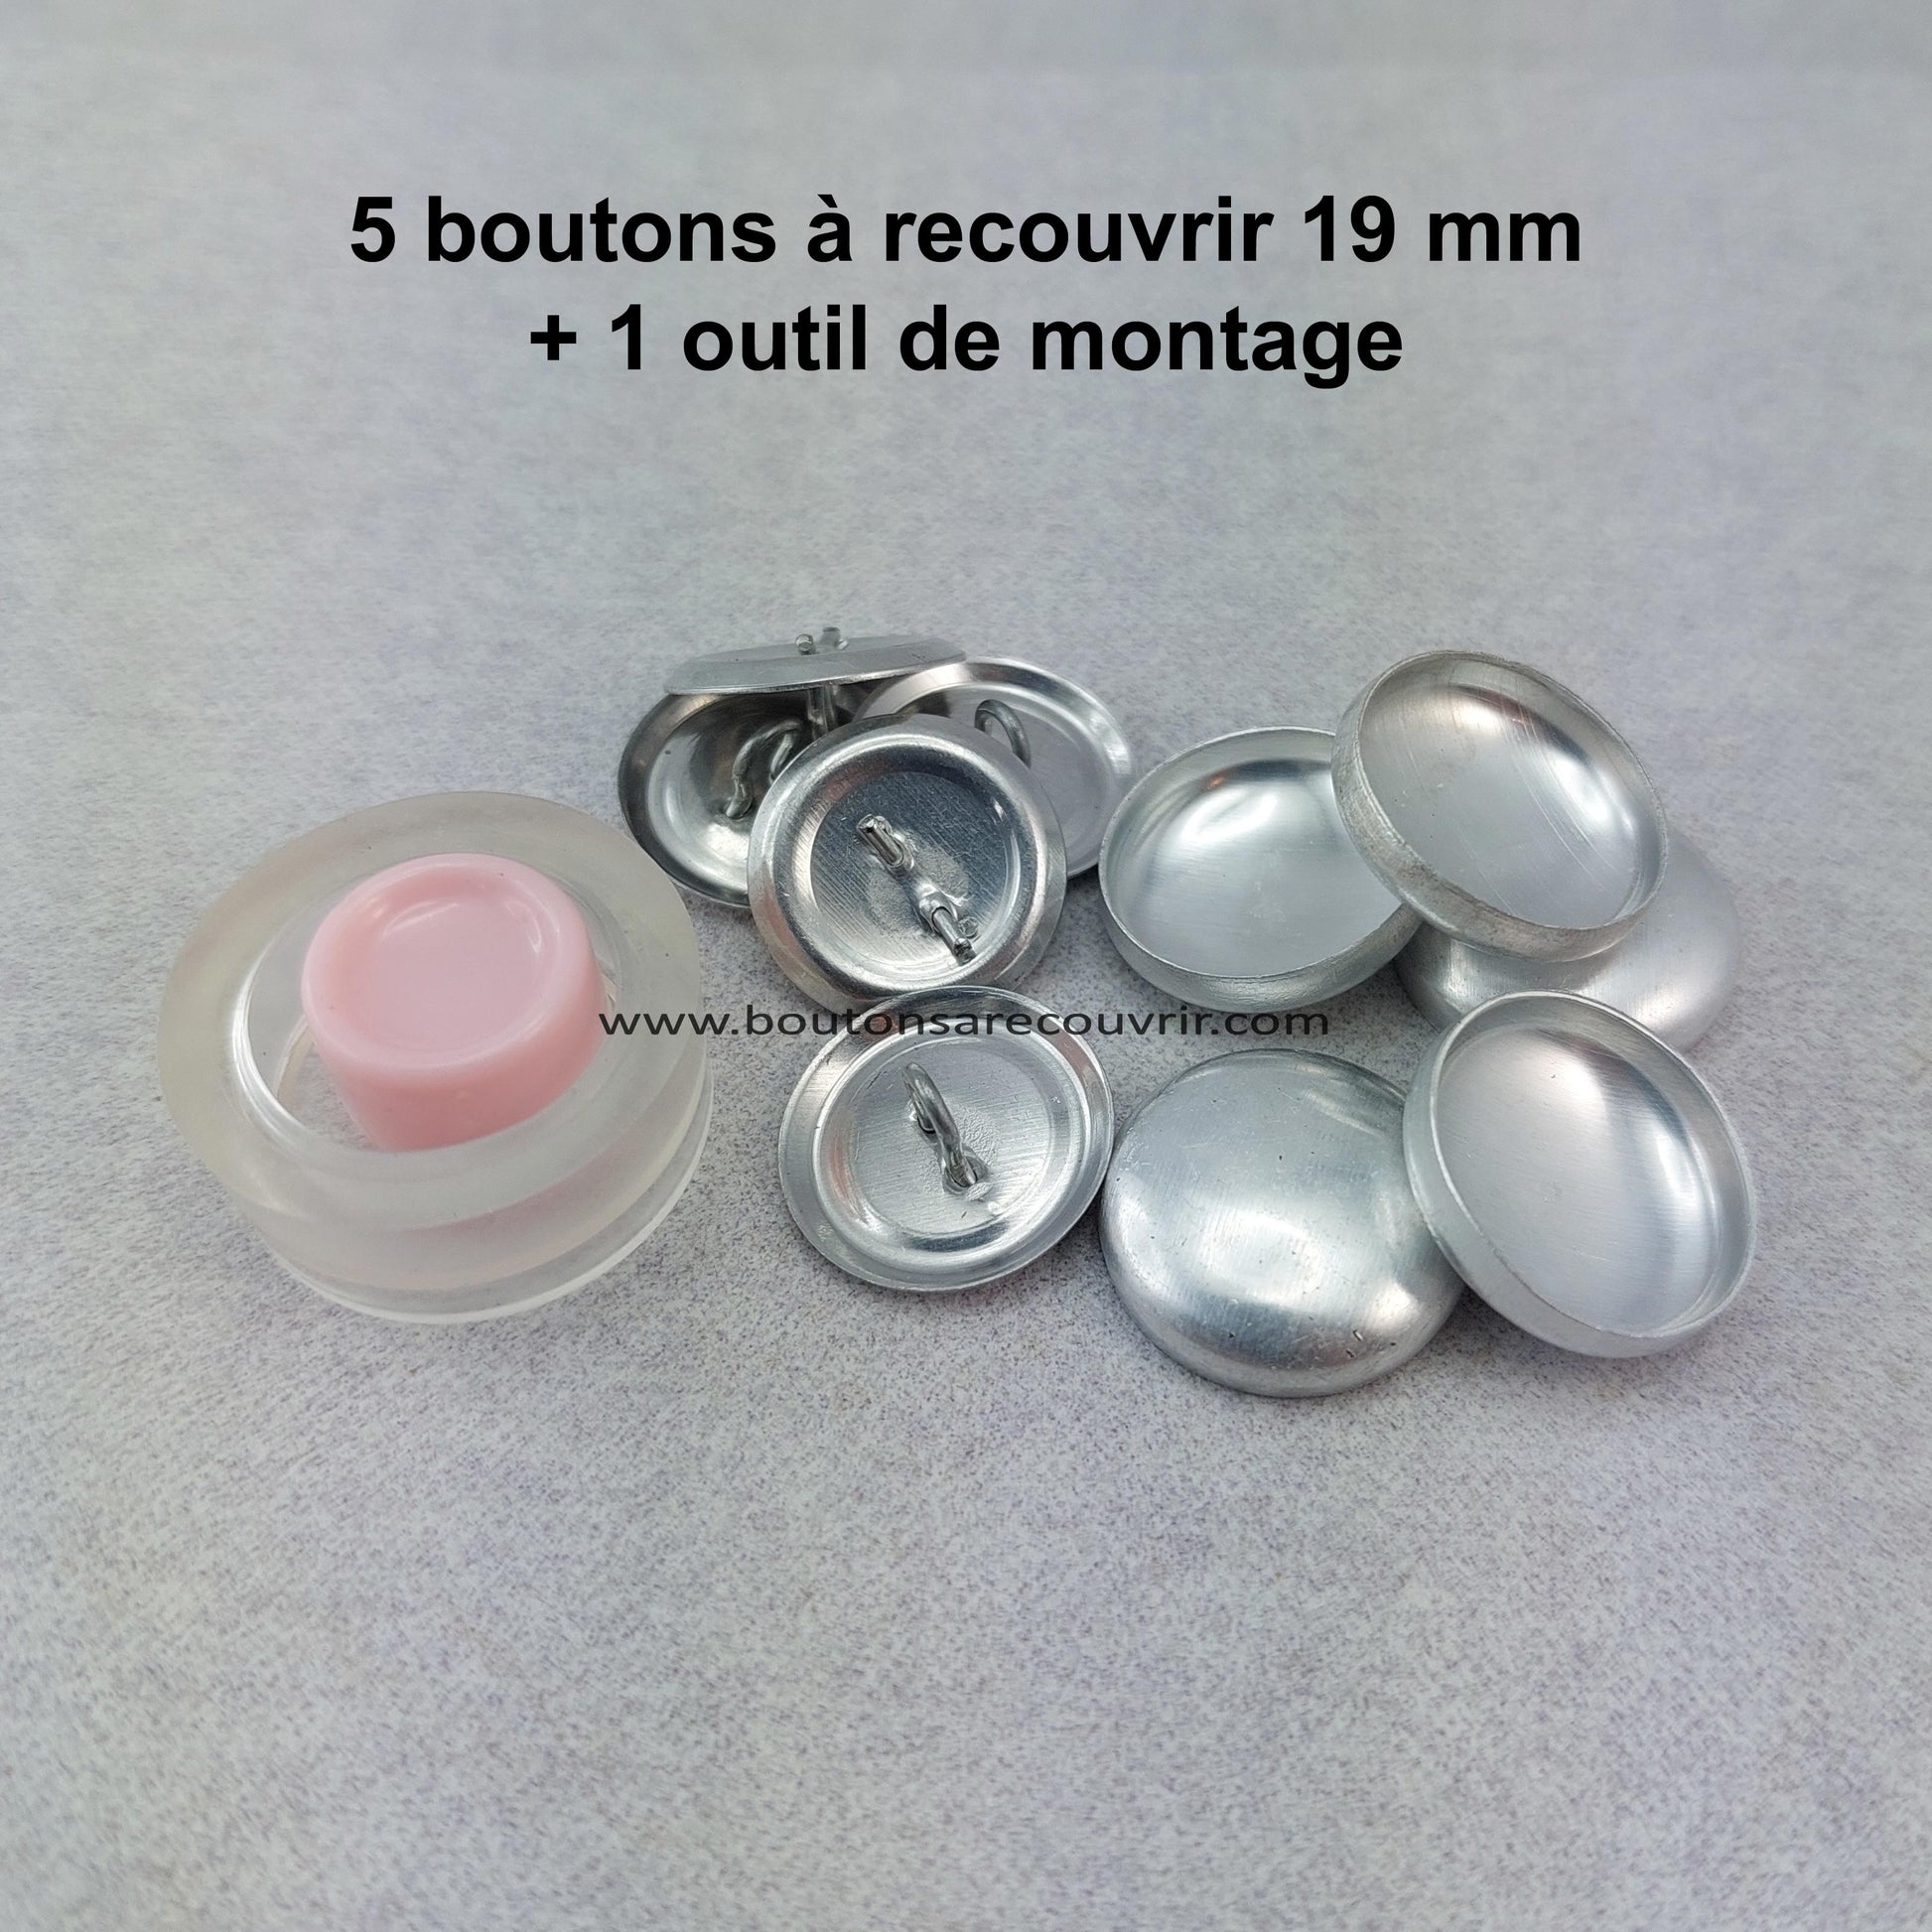 5 boutons à recouvrir 19 mm avec outil de montage